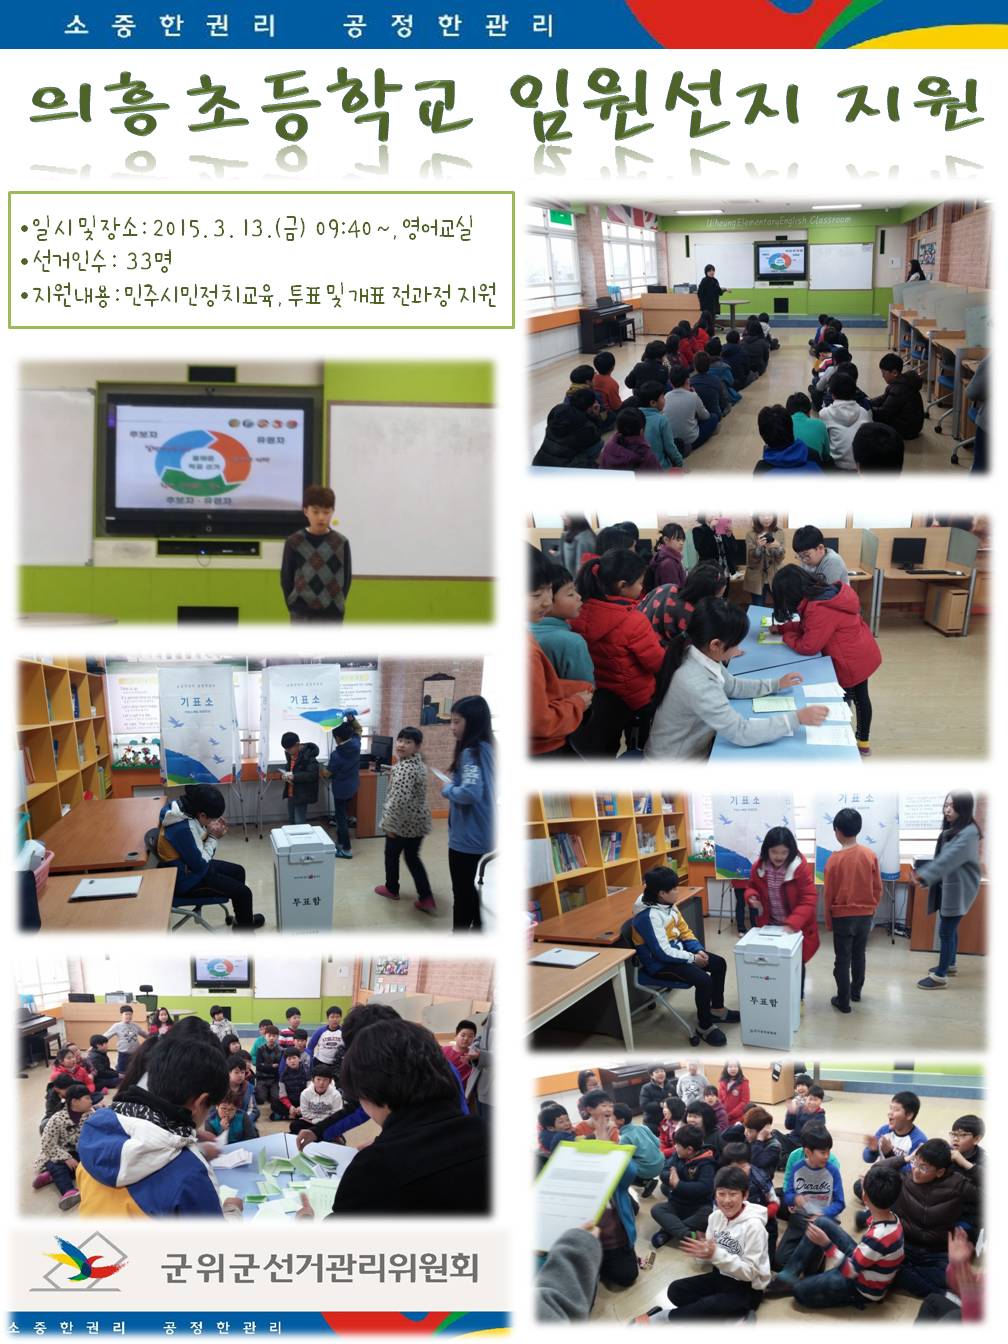 3월 13일 의흥초등학교에서 학생회 임원선거 선거지원을 하였습니다. 민주시민정치교육을 하였으며, 후보자 소견발표와 투표 및 개표하는 사진이 게시되어 있습니다